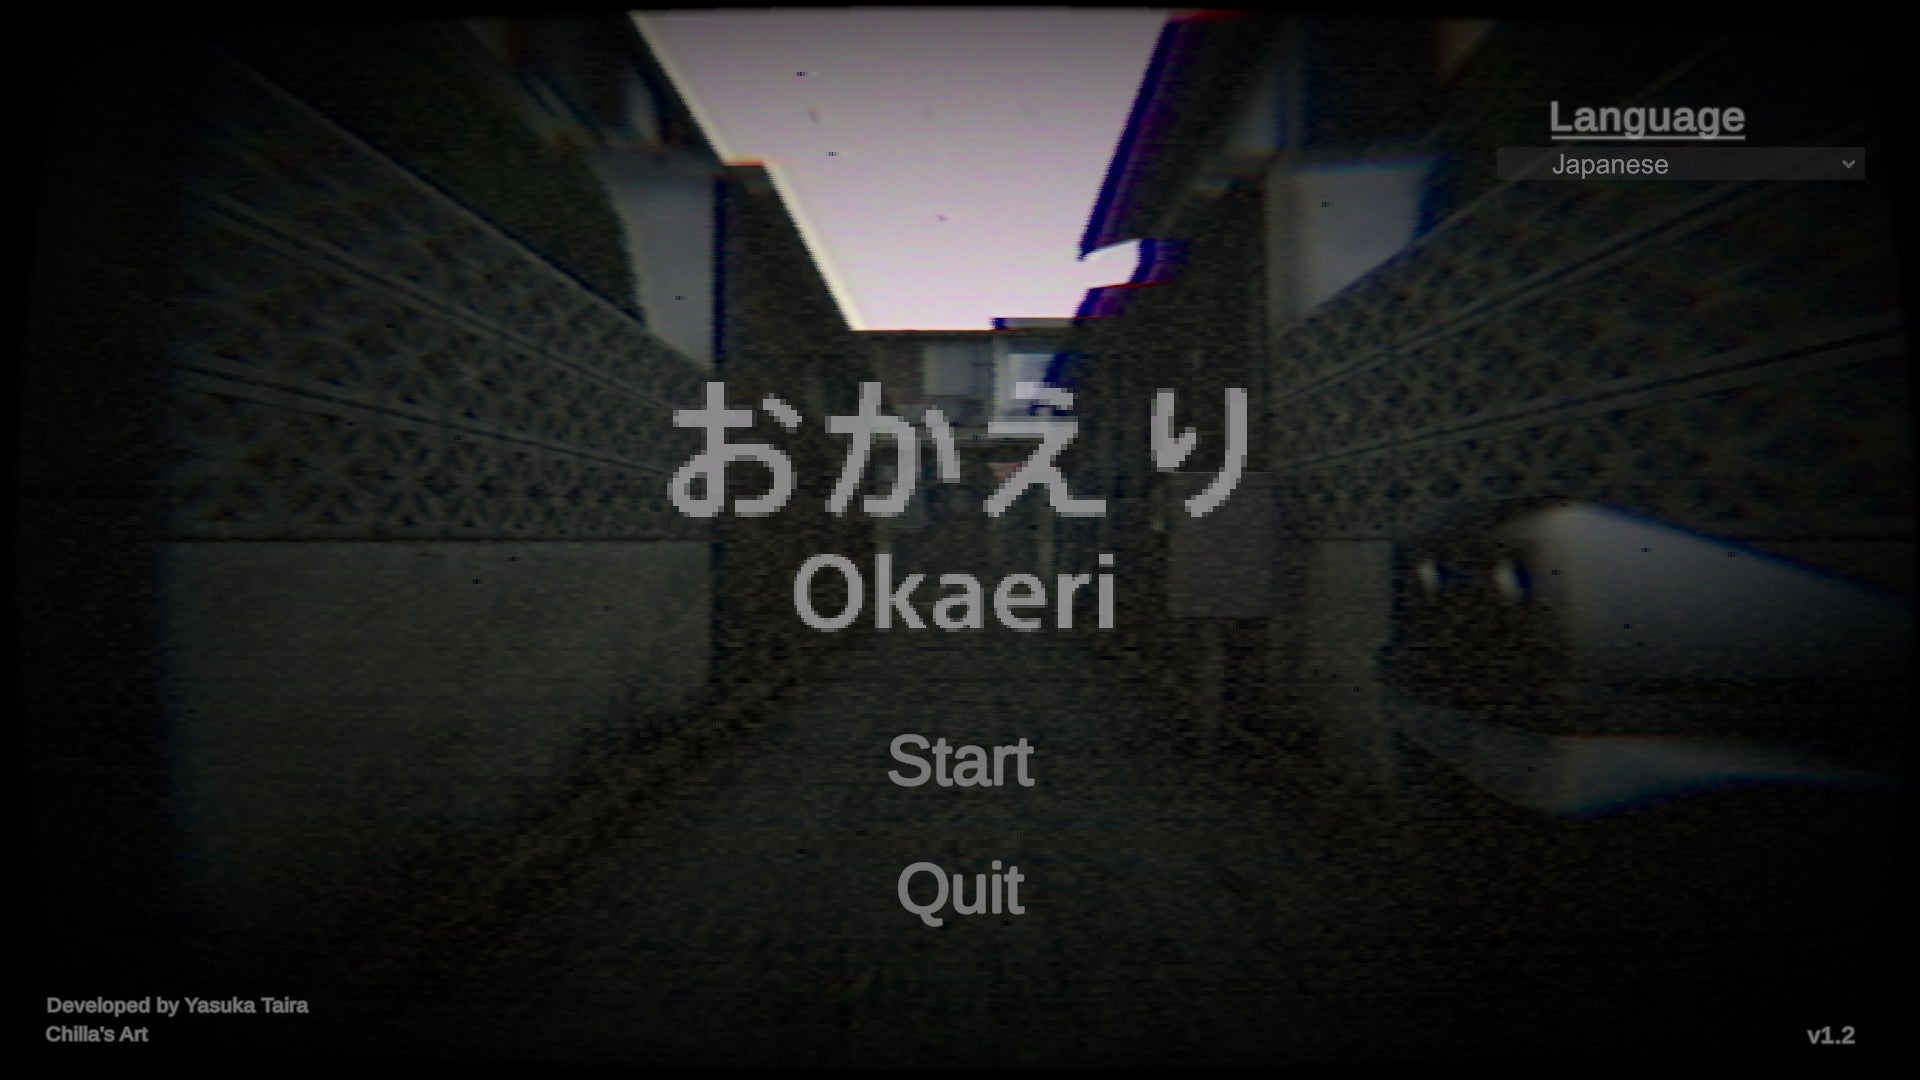 ホラーゲーム おかえり Okaeri を遊んでみた簡単な感想 エピックパインのゲームブログ